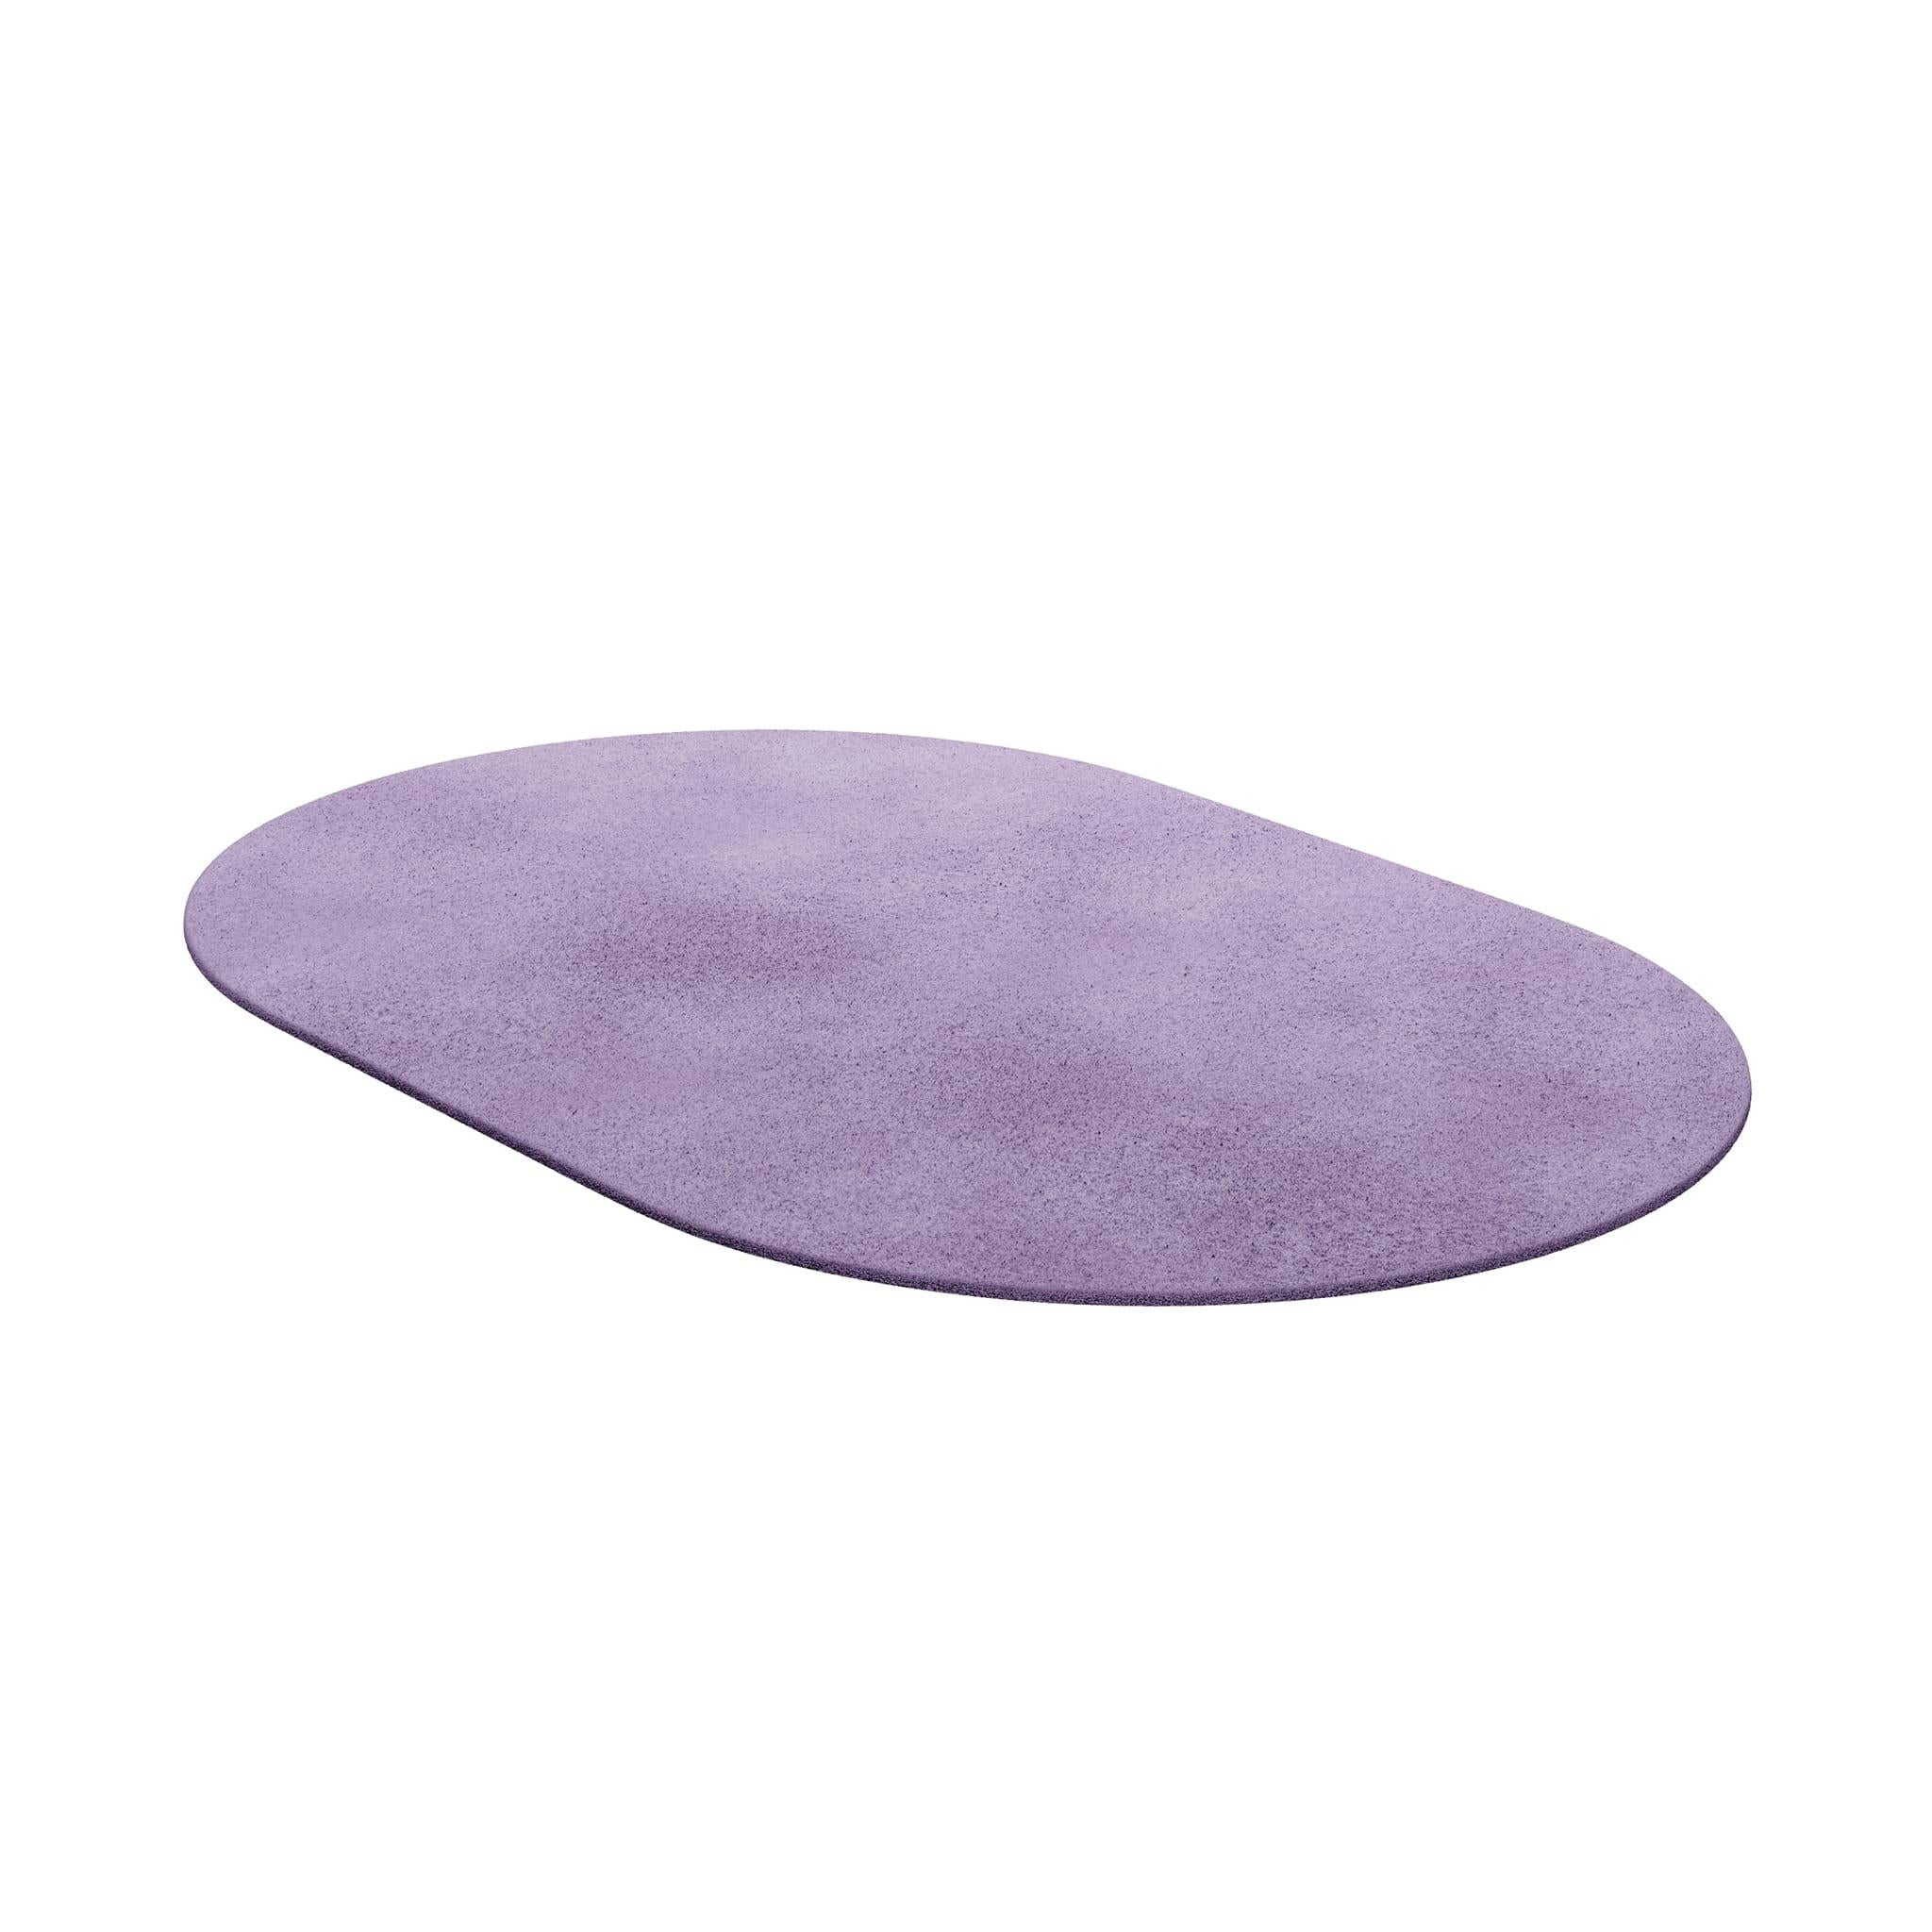 Tapis Oval Lavanda #008 ist ein moderner Teppich mit einer regelmäßigen Form. Unsere unentbehrlichen Teppiche sind in verschiedenen Formen und trendigen Farbtönen erhältlich, die mit Bedacht ausgewählt wurden, um eine Inneneinrichtung zu ergänzen,